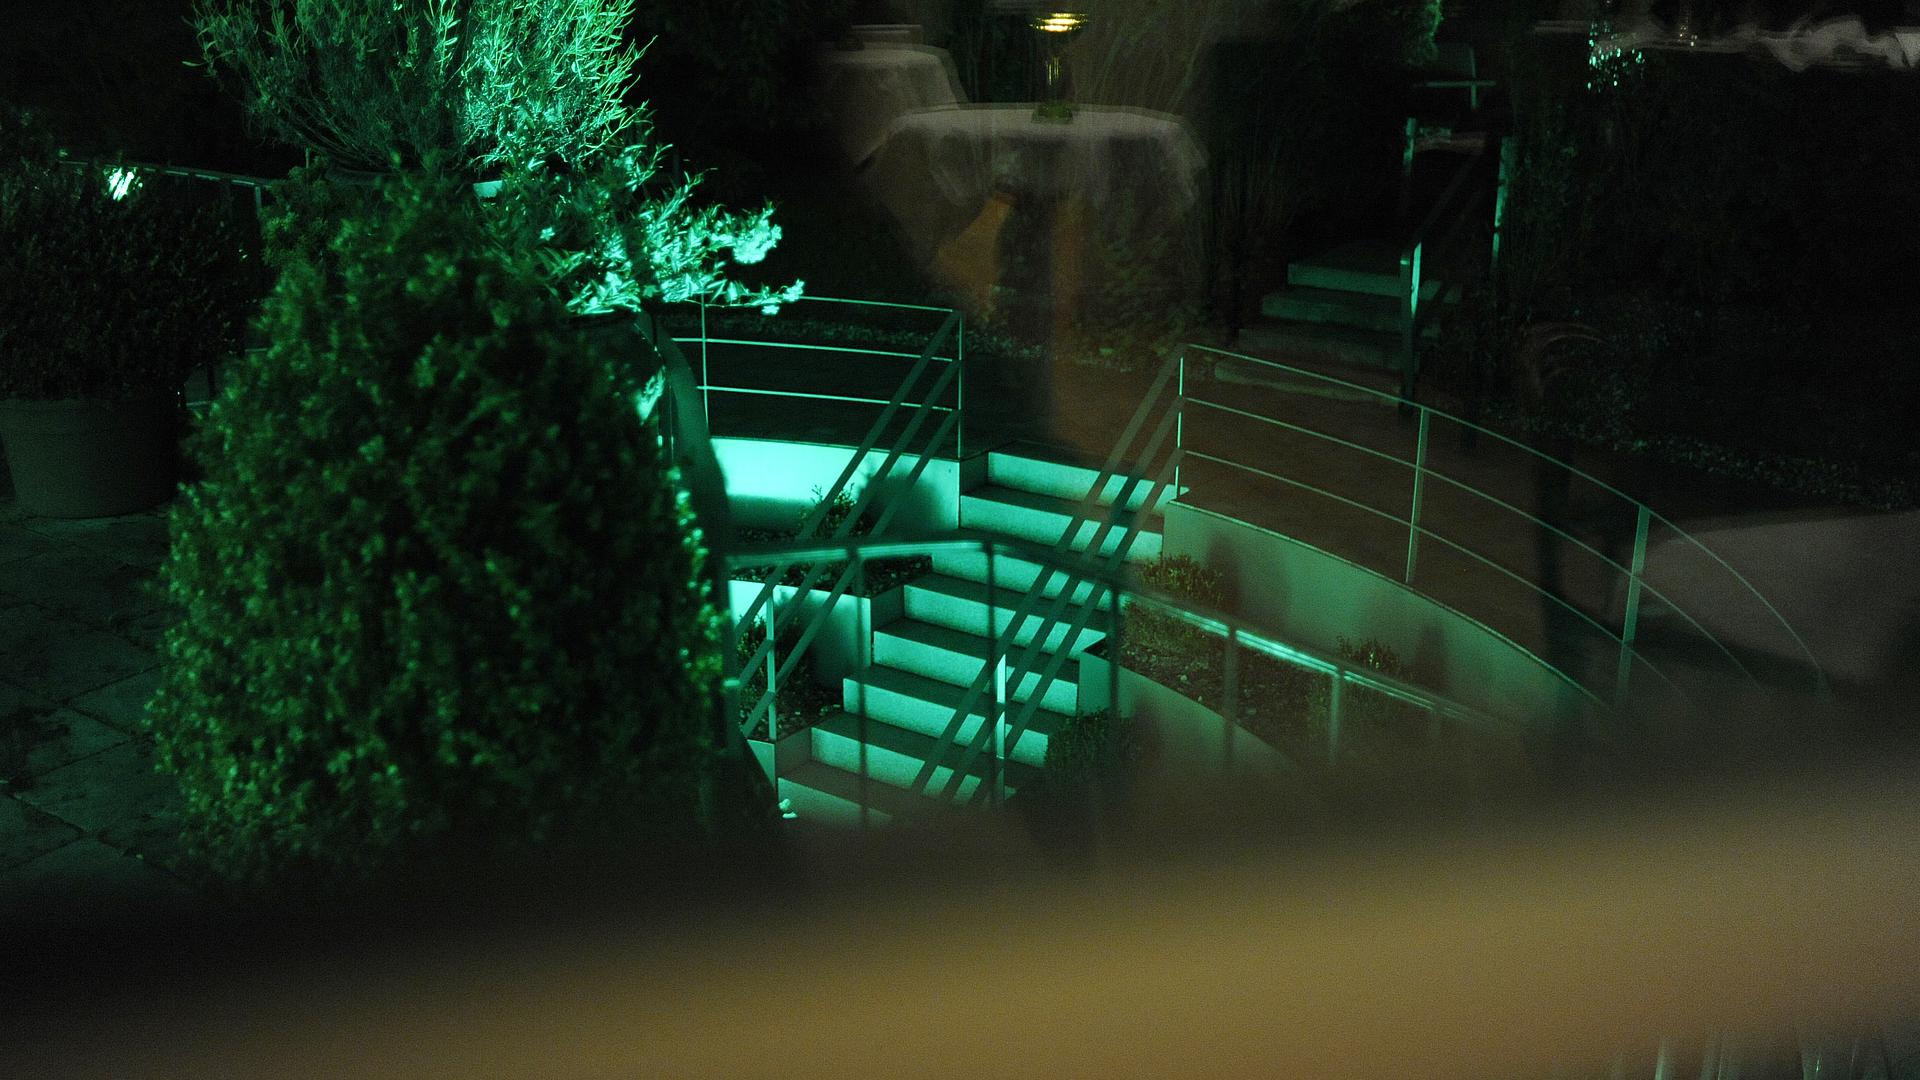 Bild: Eindrucksvoll illuminiert - auch der Springbrunnen der Stadtvilla